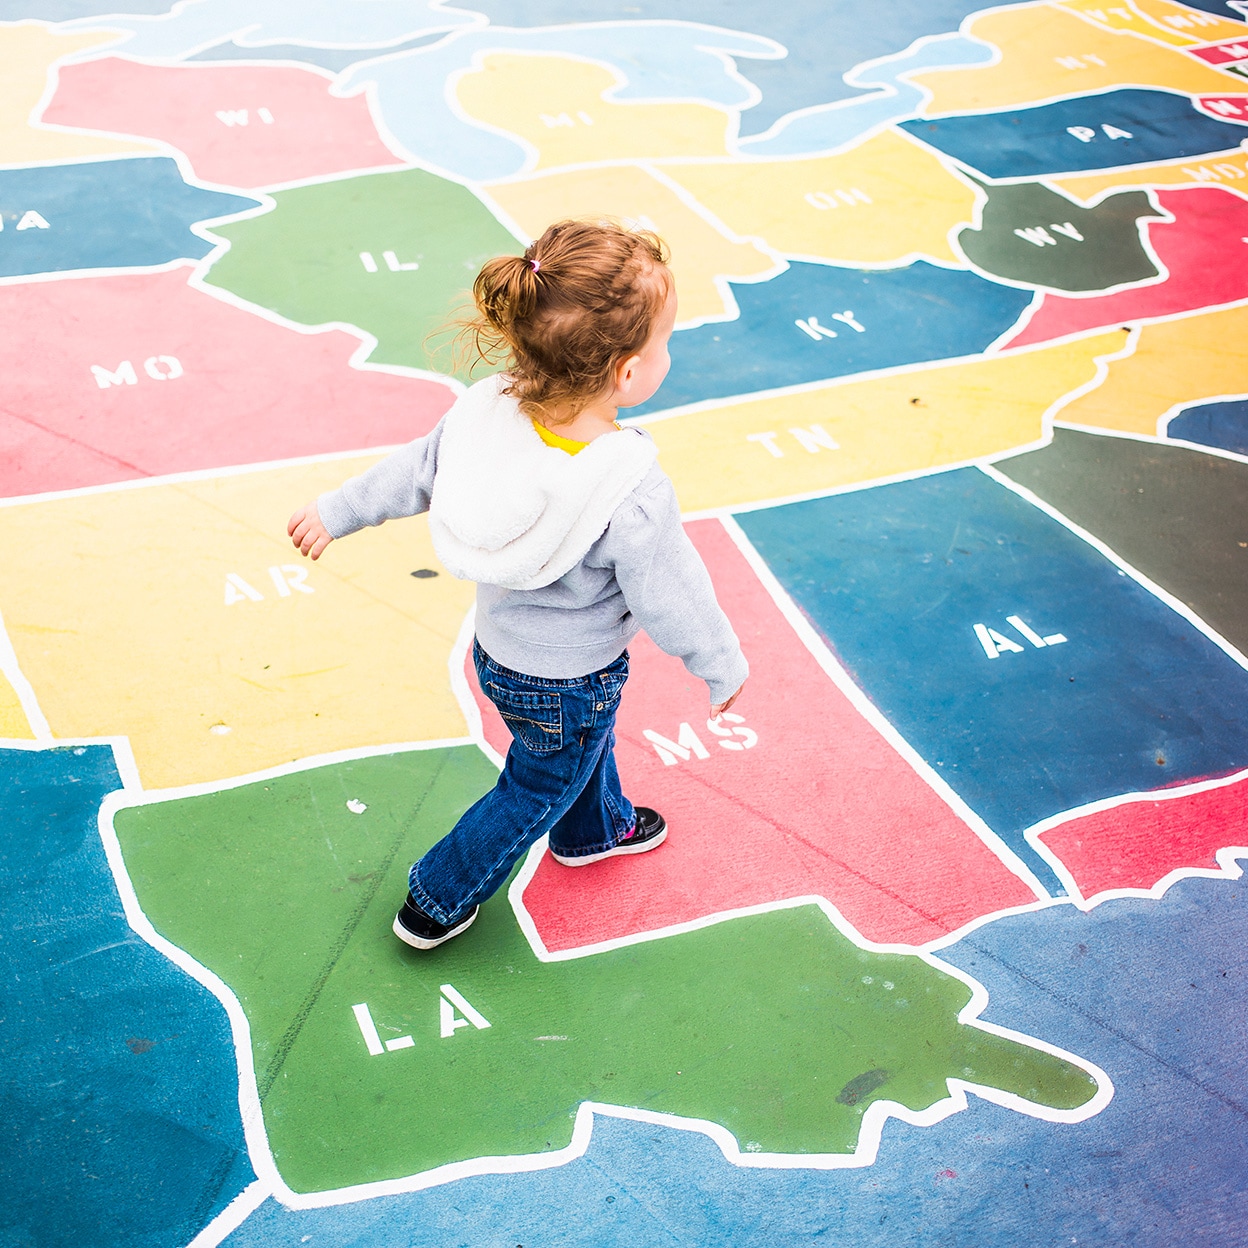 A toddler walks over a map of the U.S.A. in a playground